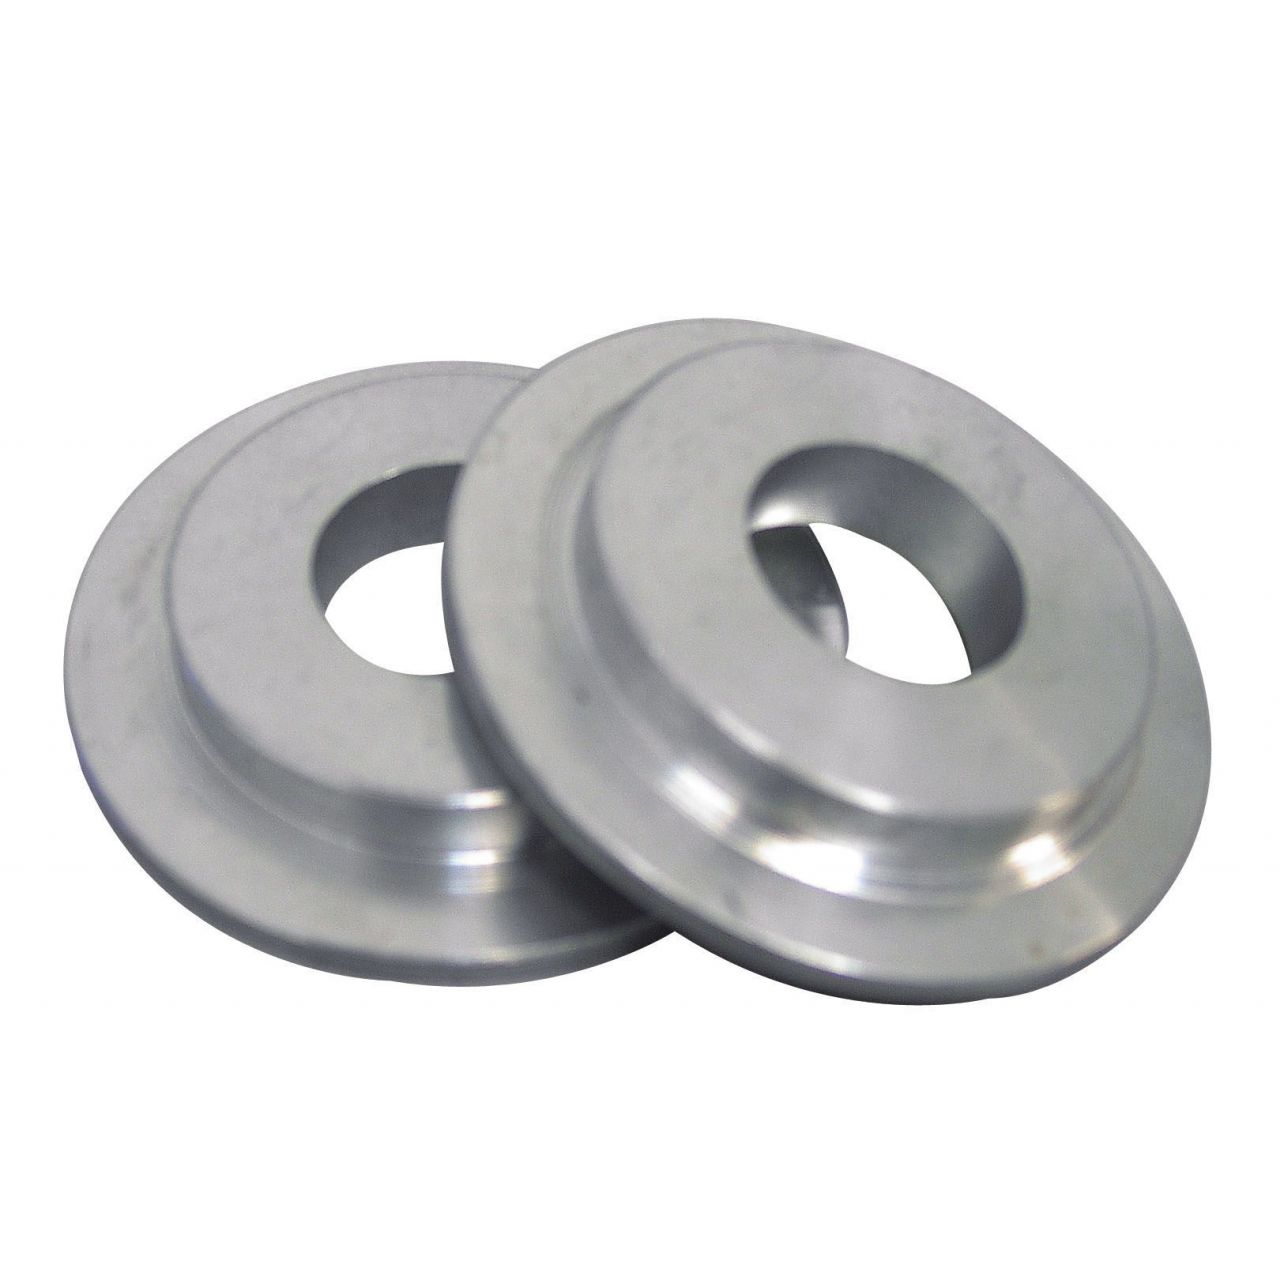 Bridas reductoras (Medidas 76-25 mm; Material Aluminio)